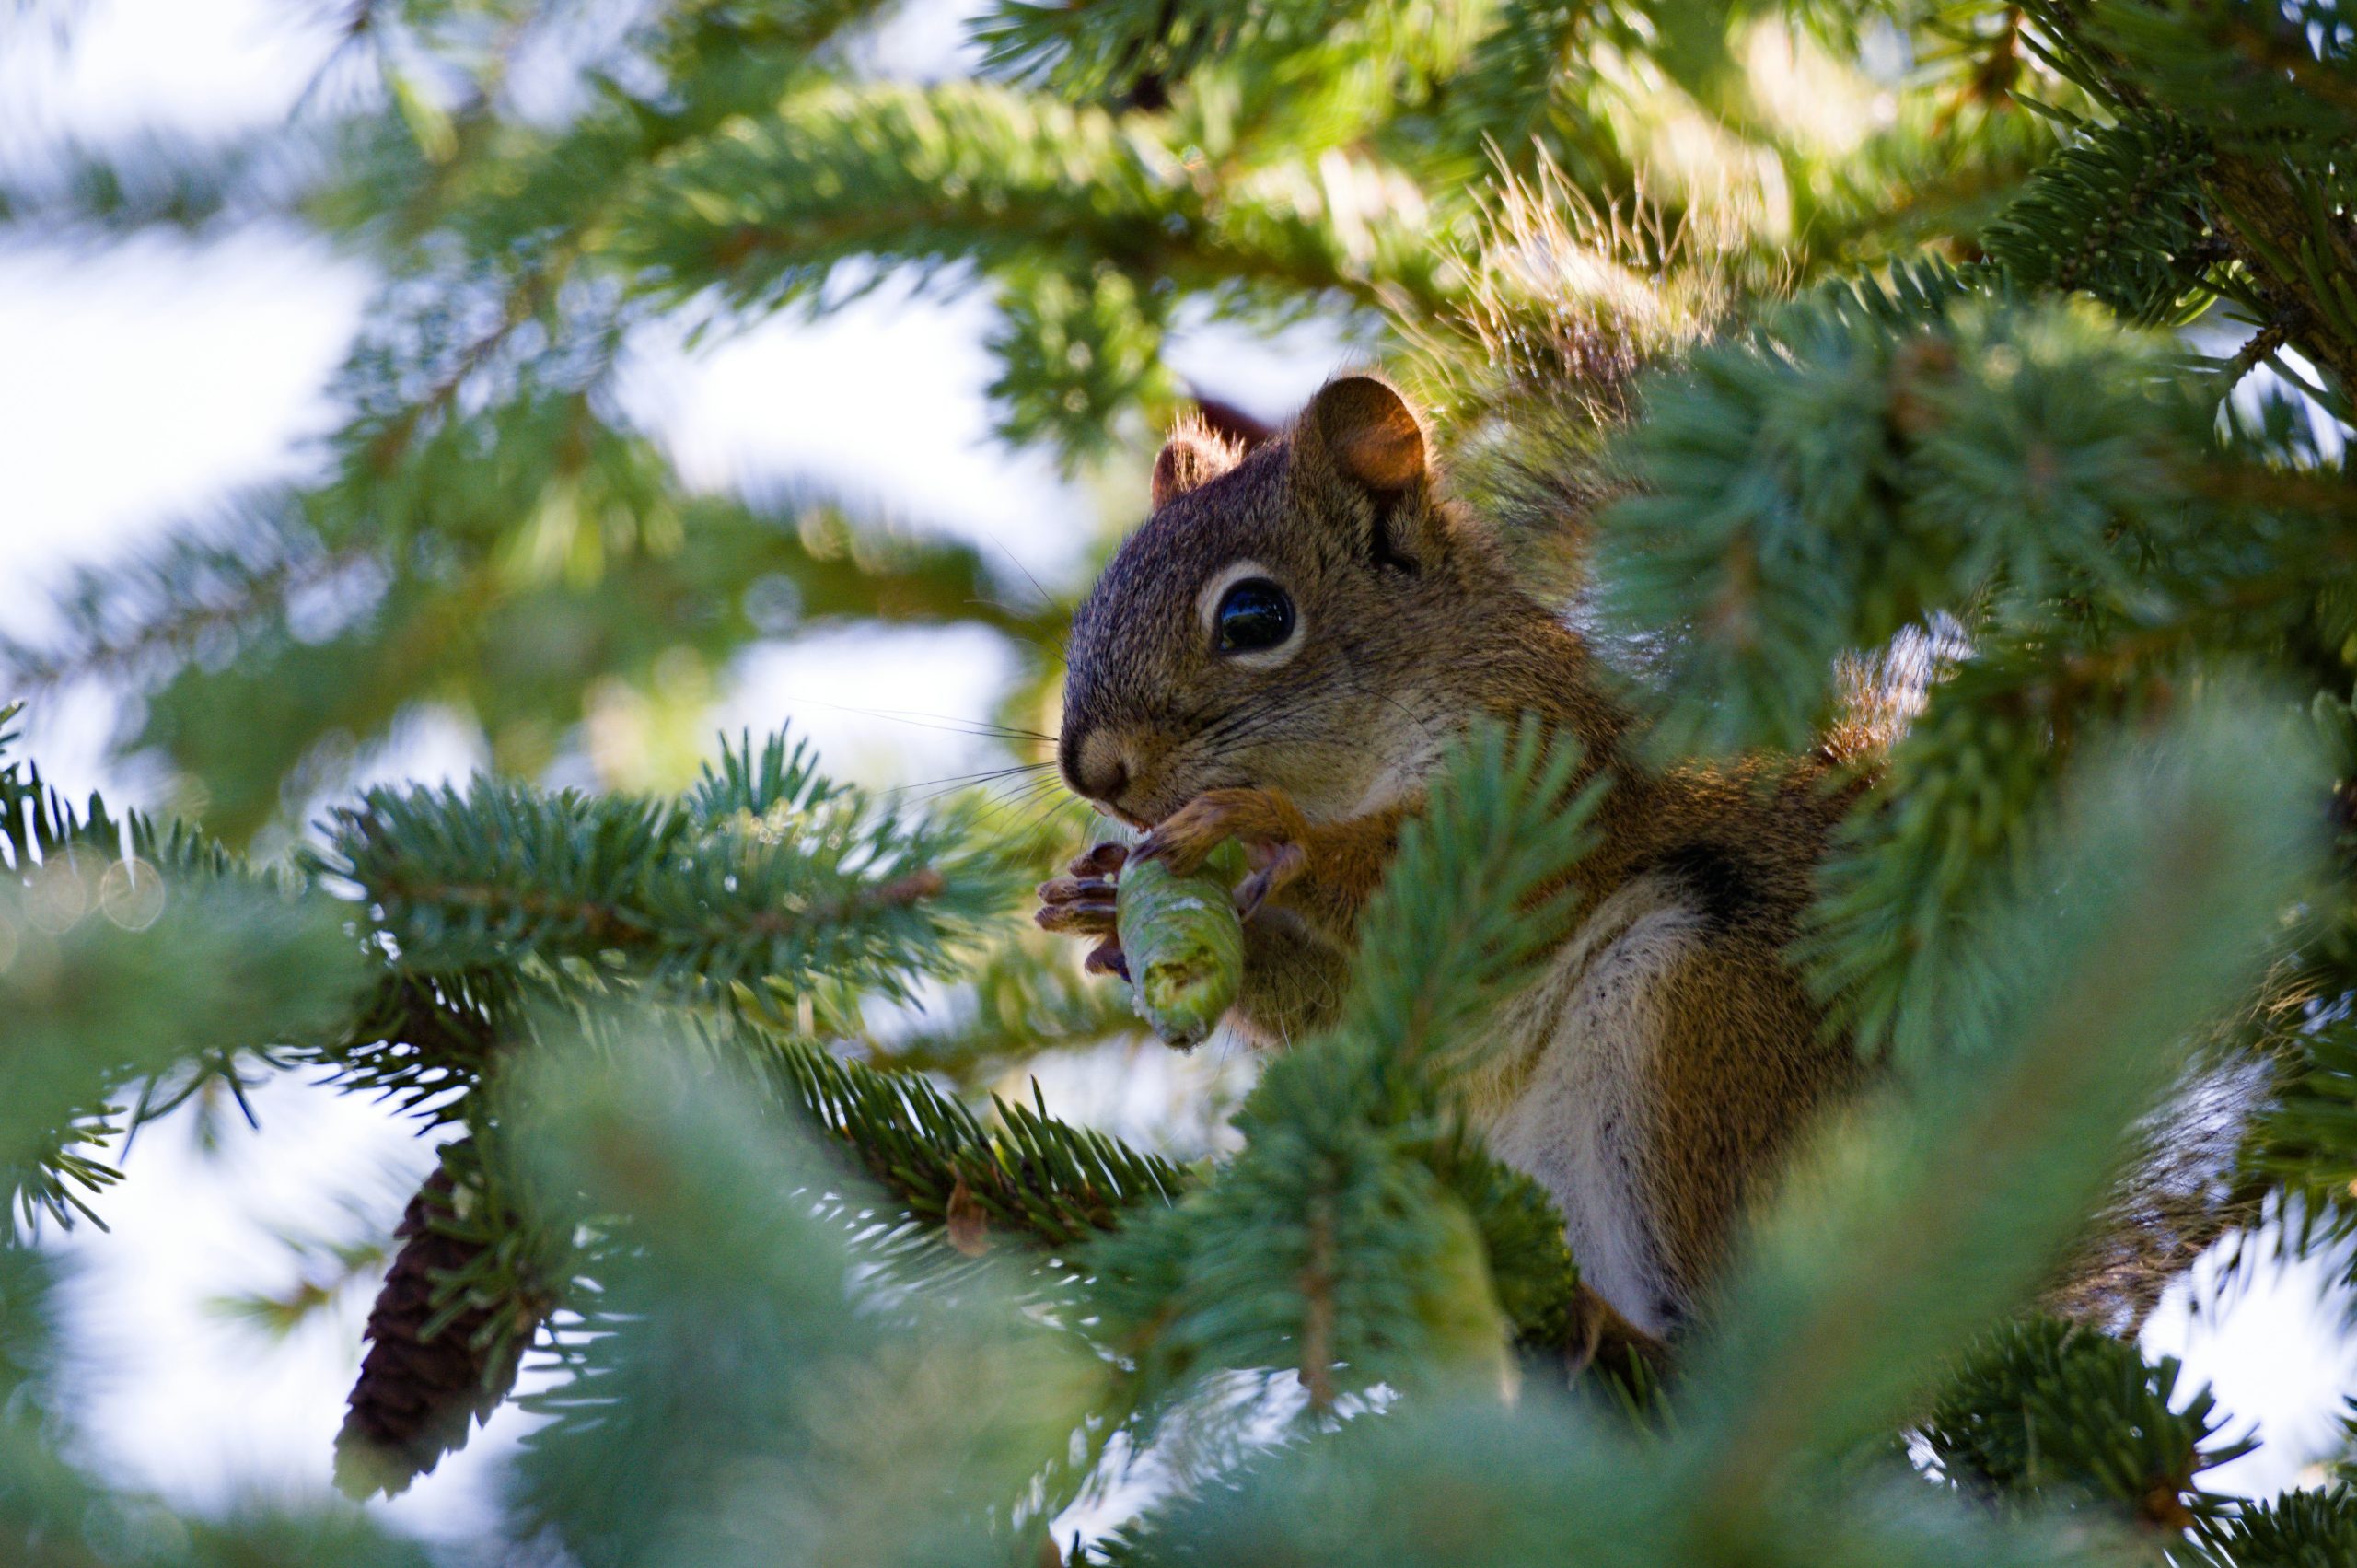 Squirrel feeding in a forest. Image: Unsplash.